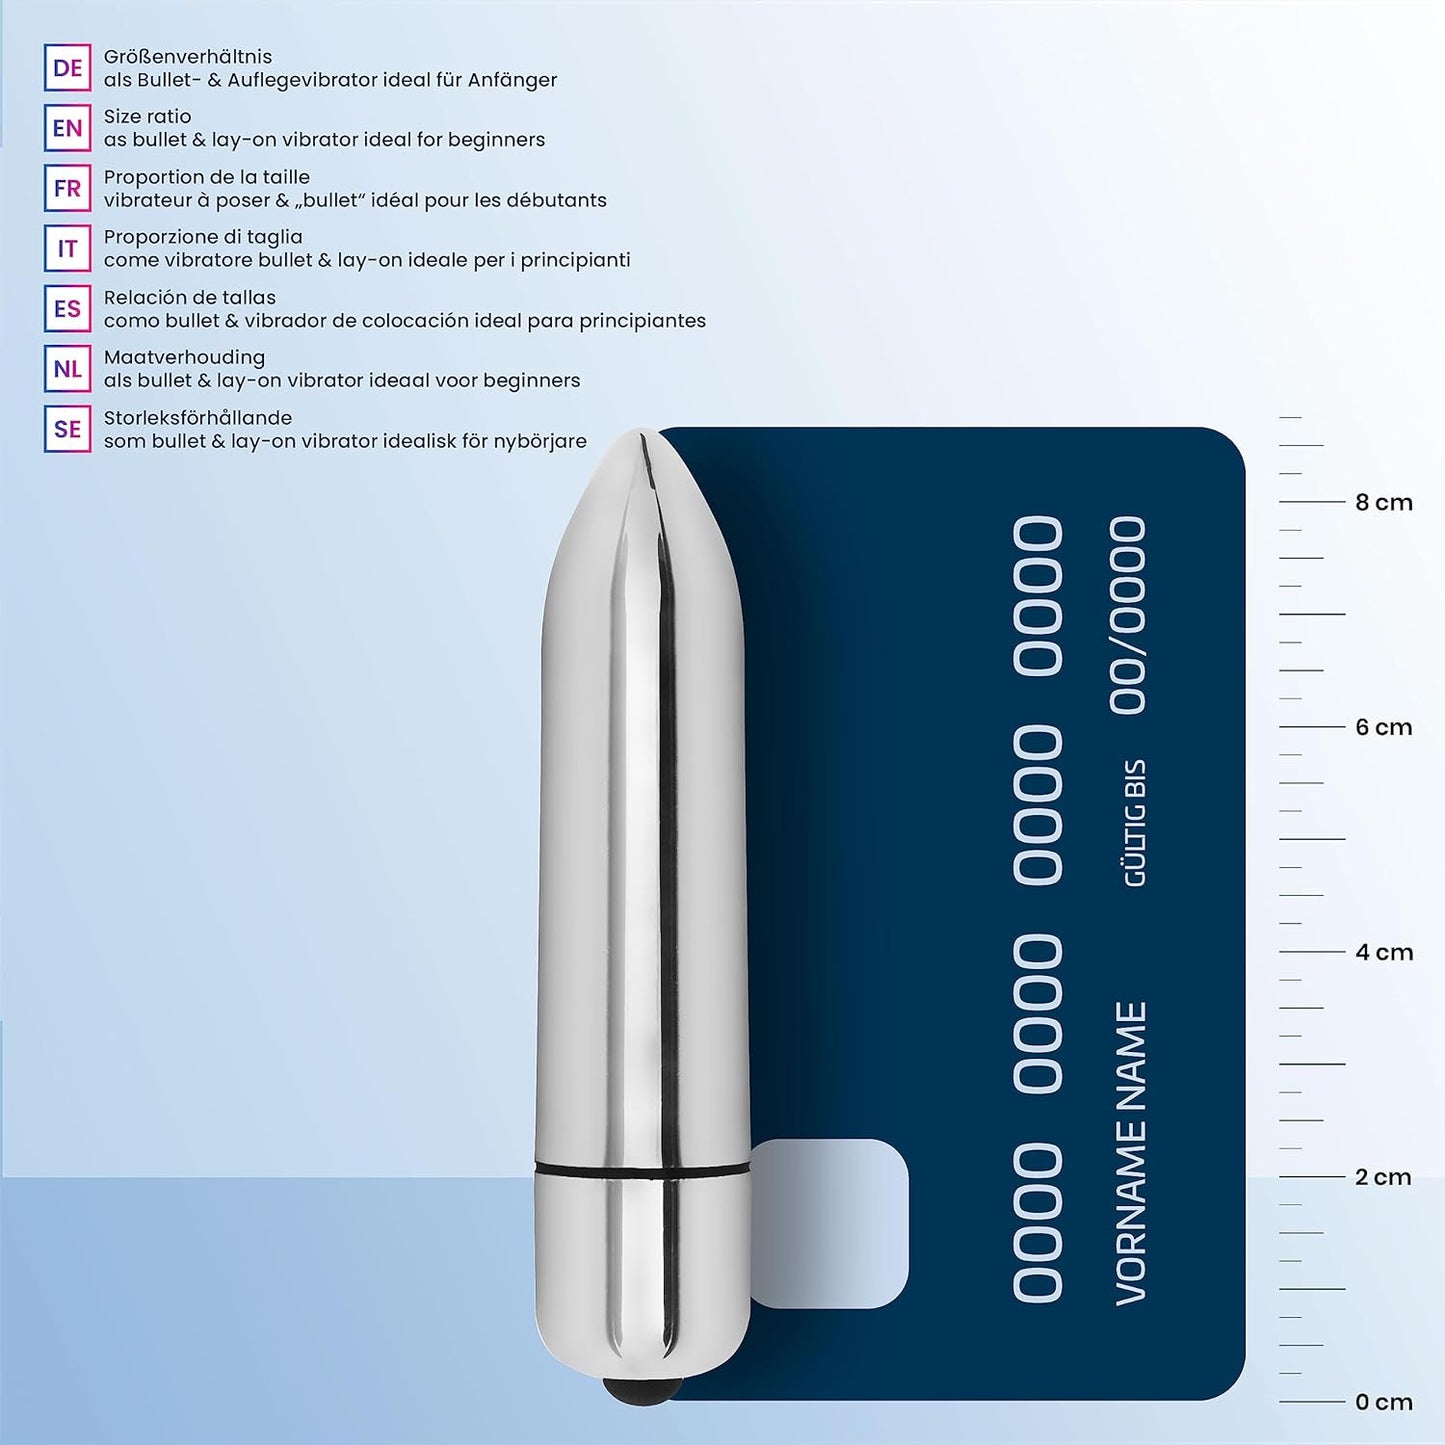 Finger vibrator mini vibrator lay-on vibrator 8.6cm 